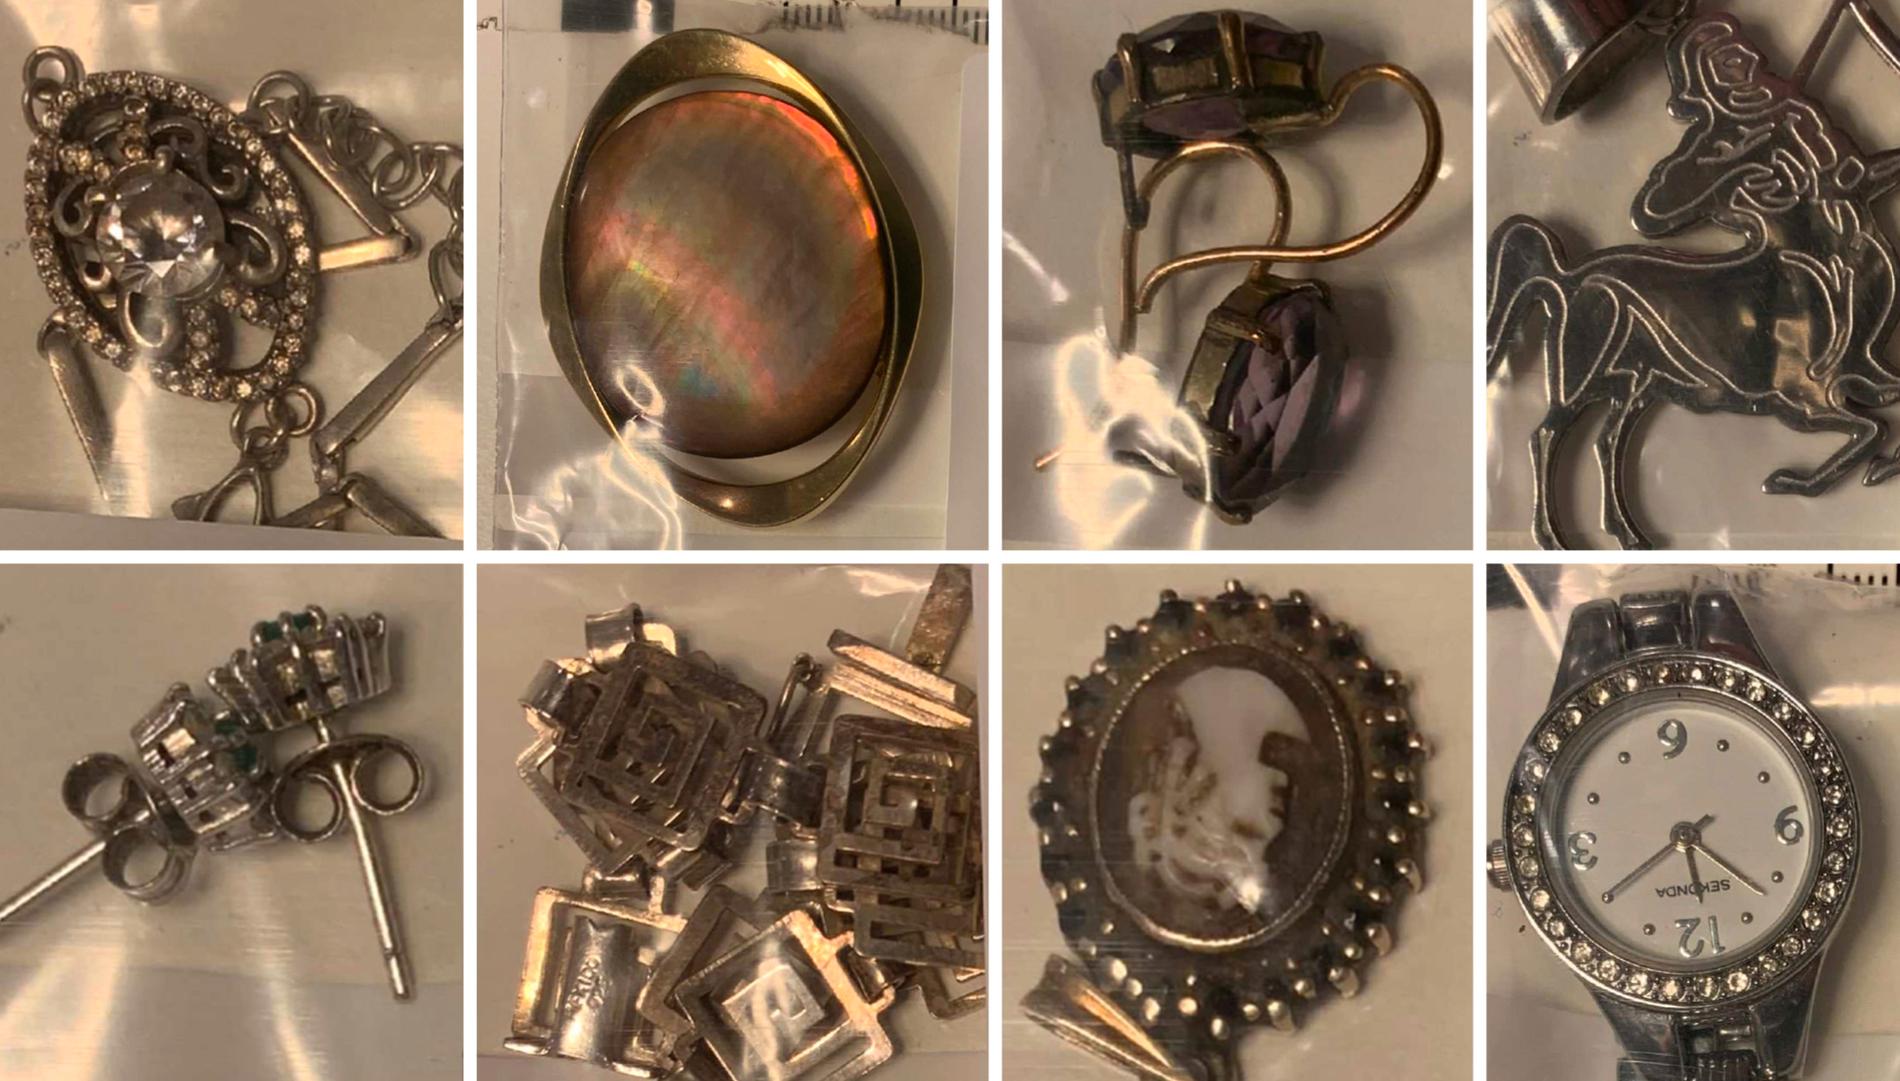 Några av de smycken som hittades i kvinnans källarförråd.